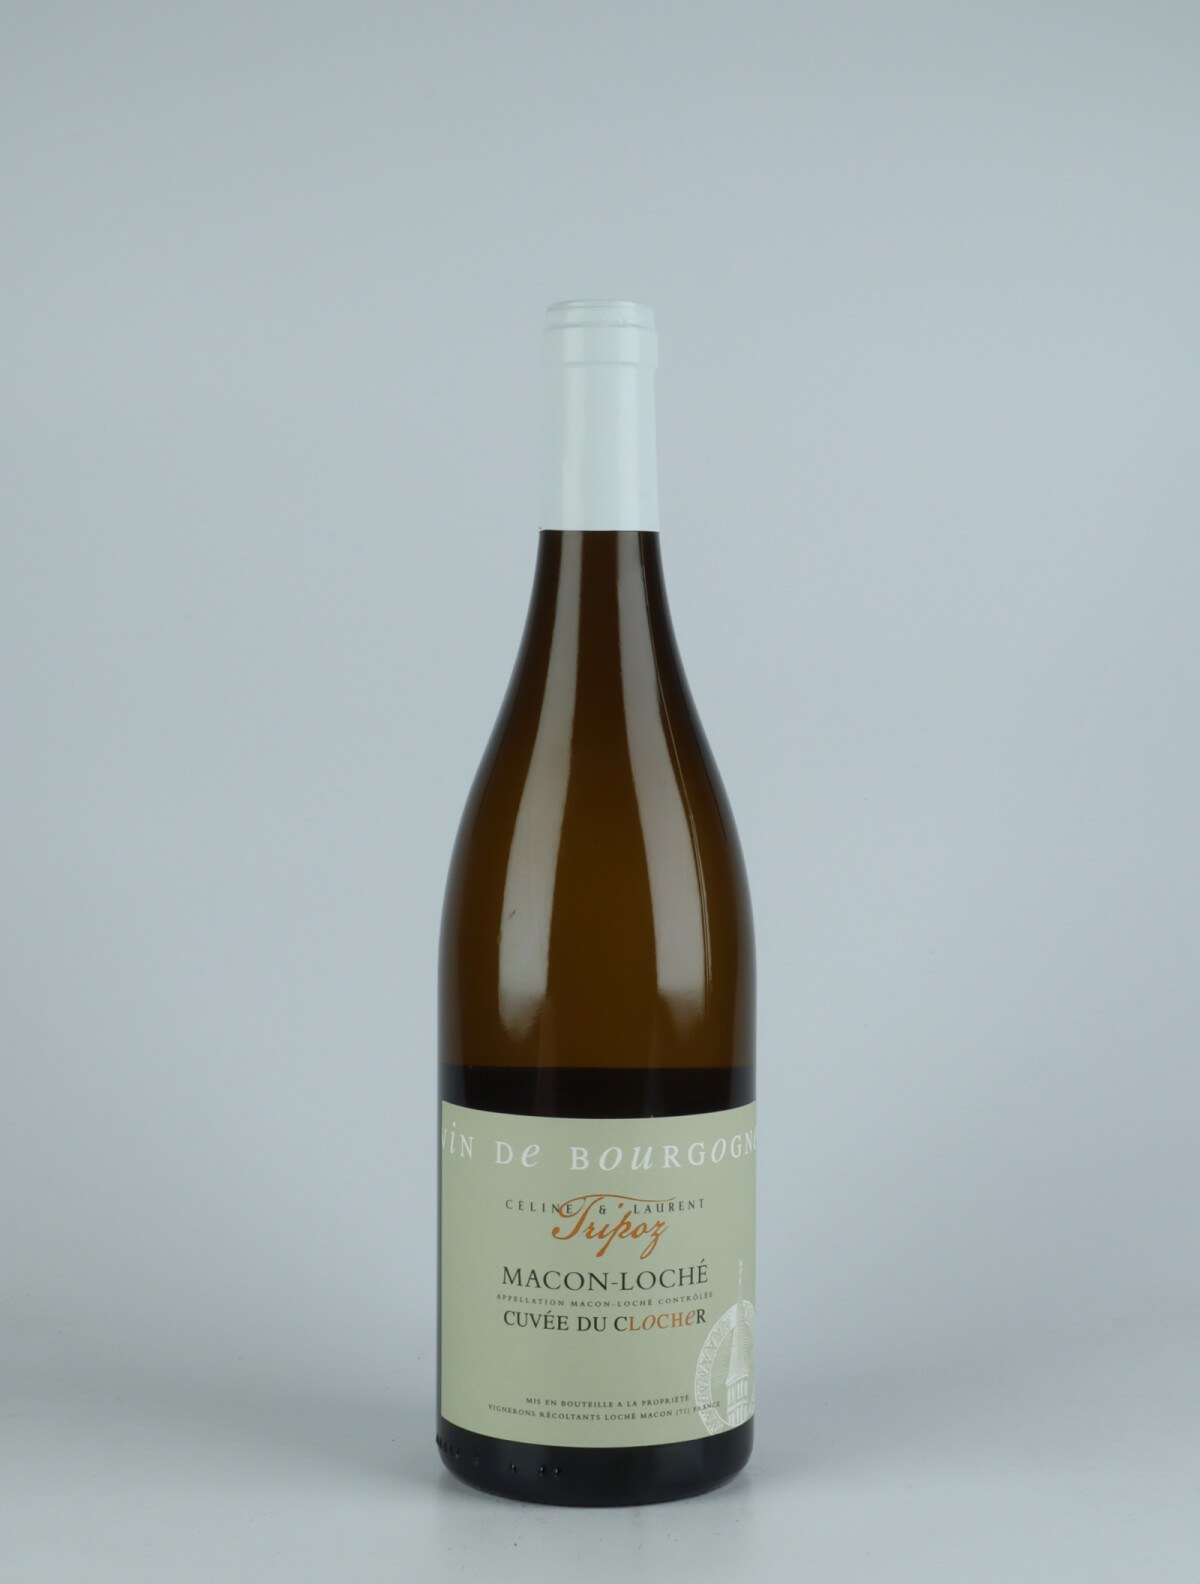 En flaske 2020 Mâcon-Loché - Cuvée du Clocher Hvidvin fra Céline & Laurent Tripoz, Bourgogne i Frankrig